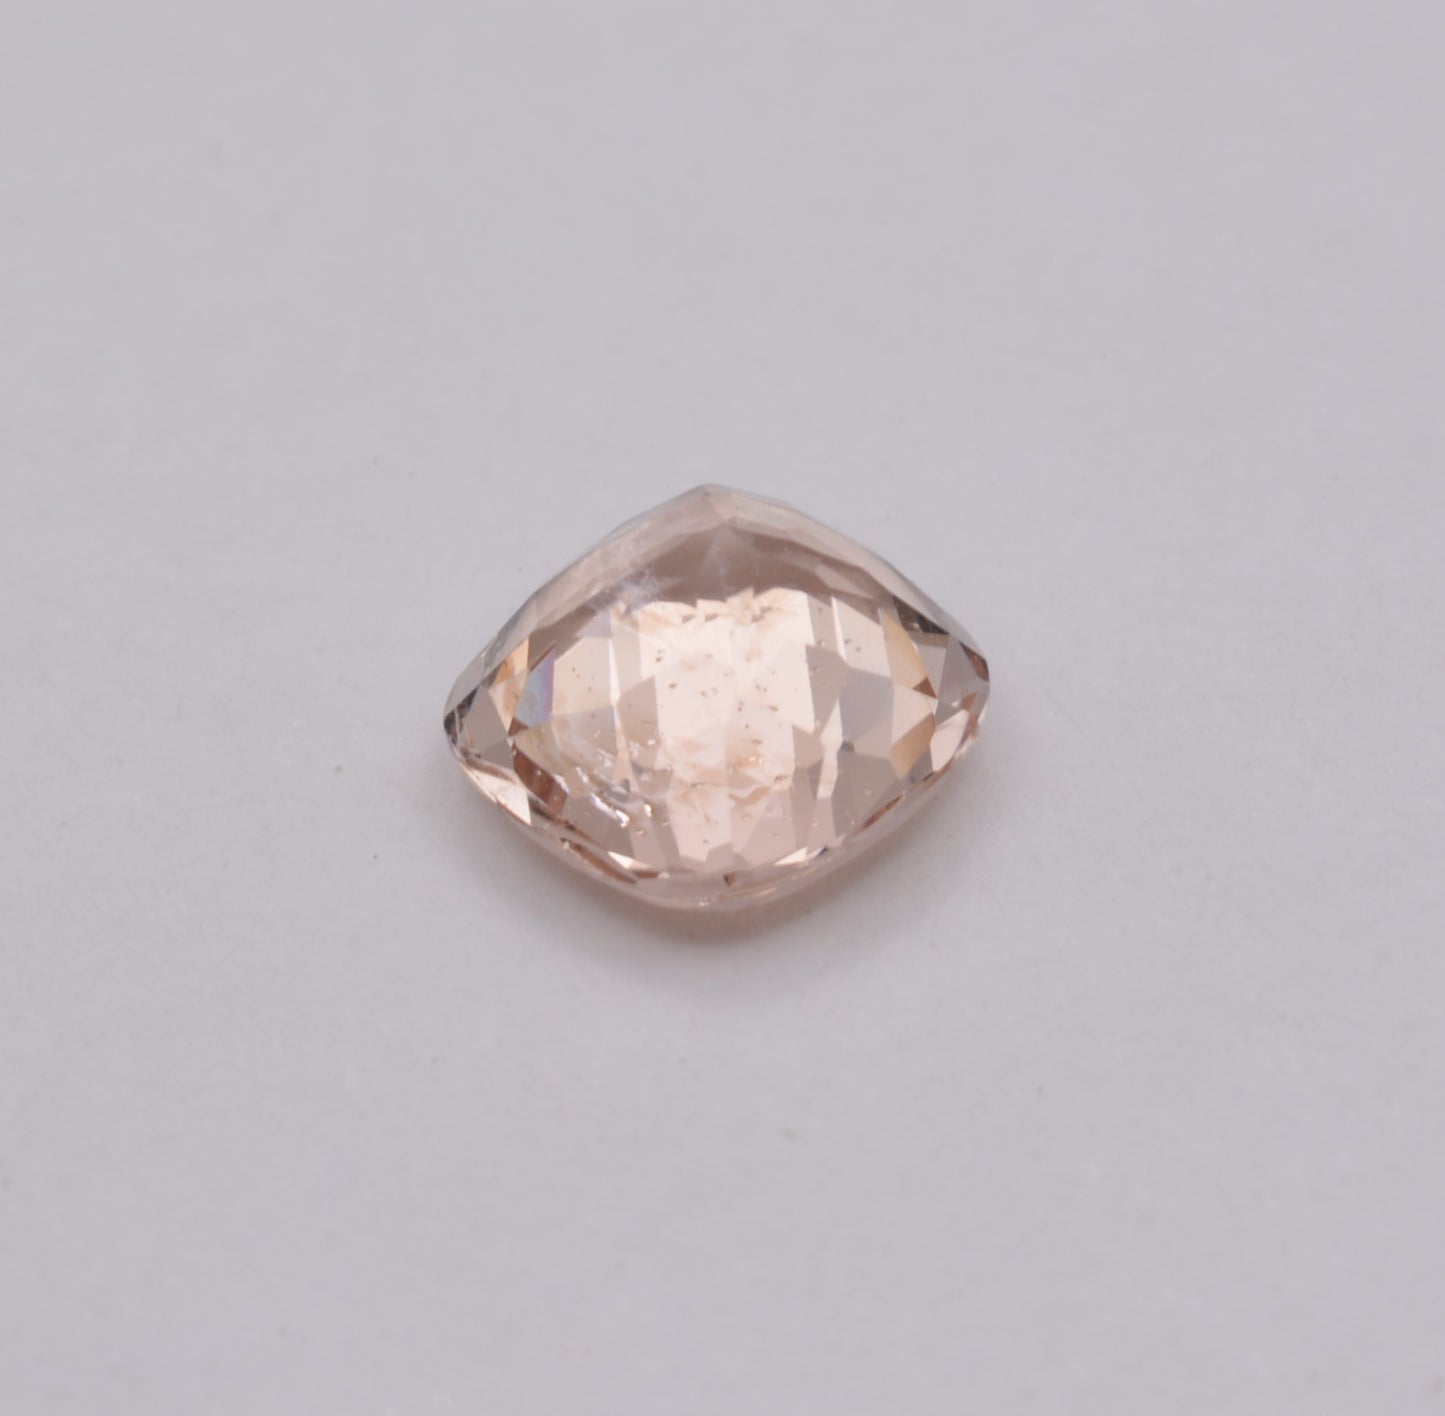 Morganite Coussin 2,04ct - pierre précieuse - gemme